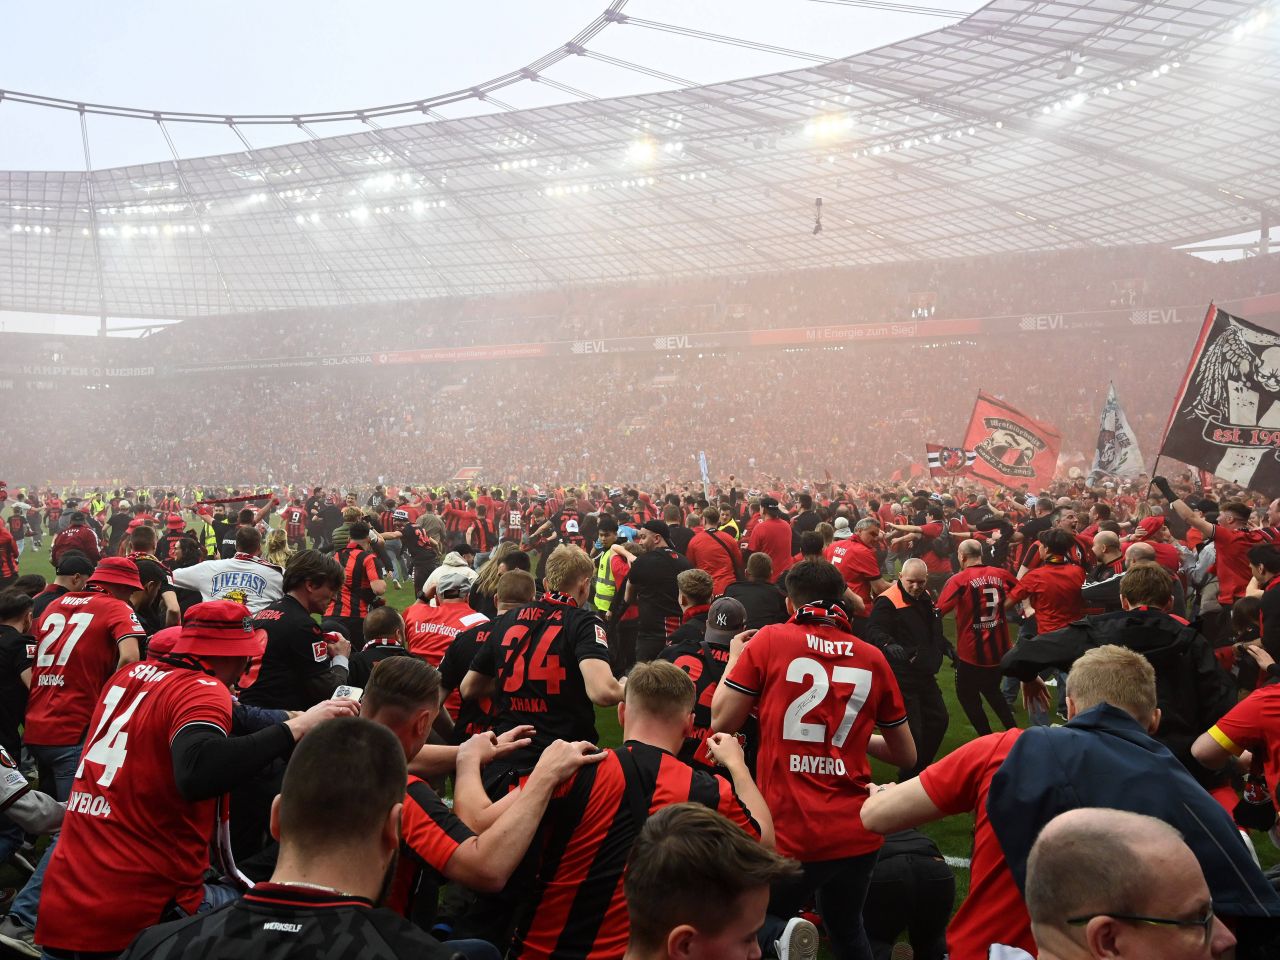 Imaginile bucuriei! Bayer Leverkusen, campioană pentru prima dată în istorie! Fanii au luat cu asalt arena_10